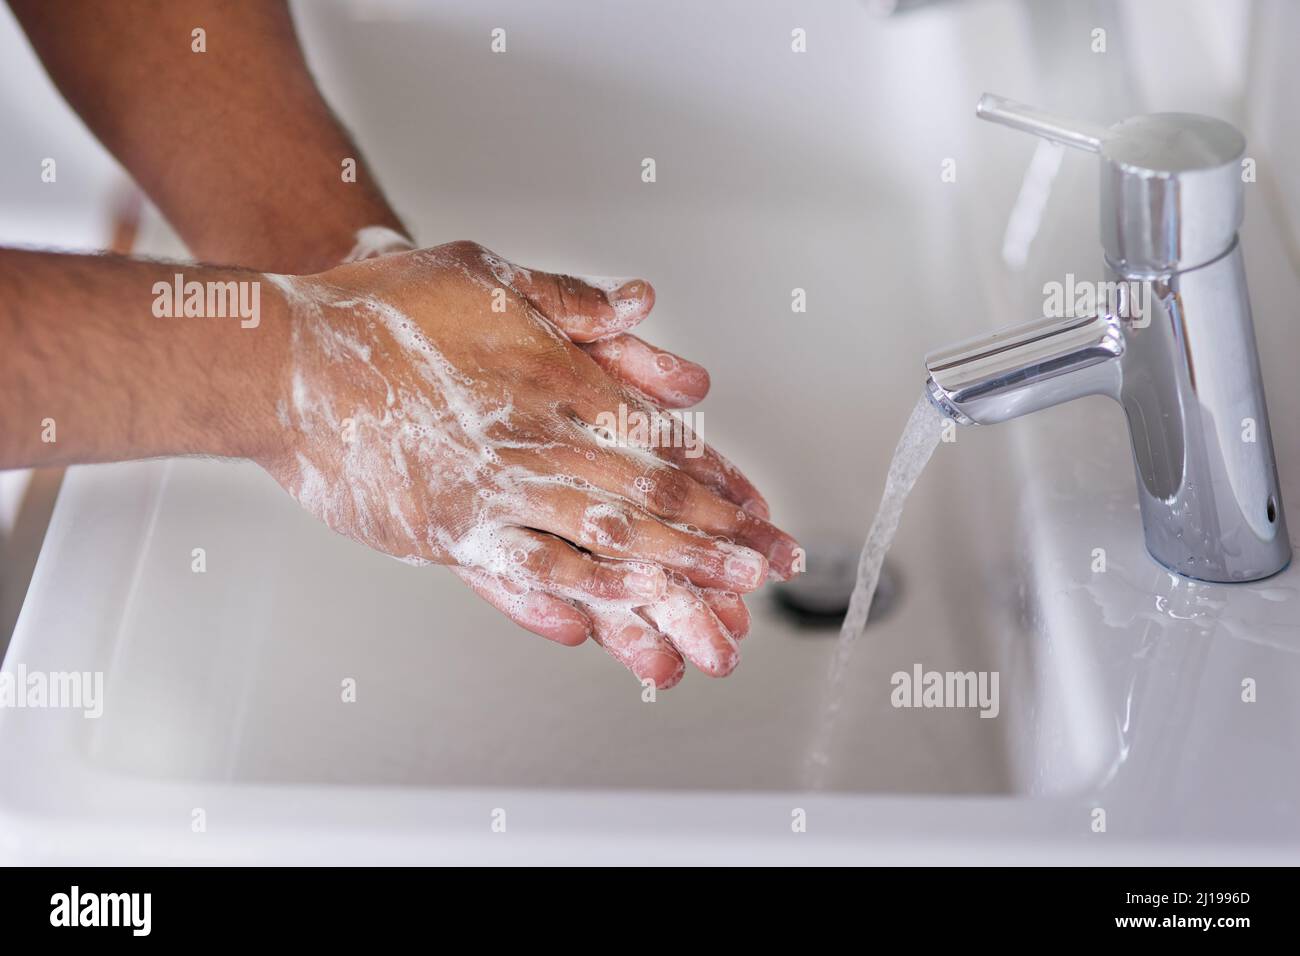 Gute Hygiene fördert die Gesundheit. Ein kurzer Schuss eines Mannes, der sich die Hände im Badezimmer wascht. Stockfoto